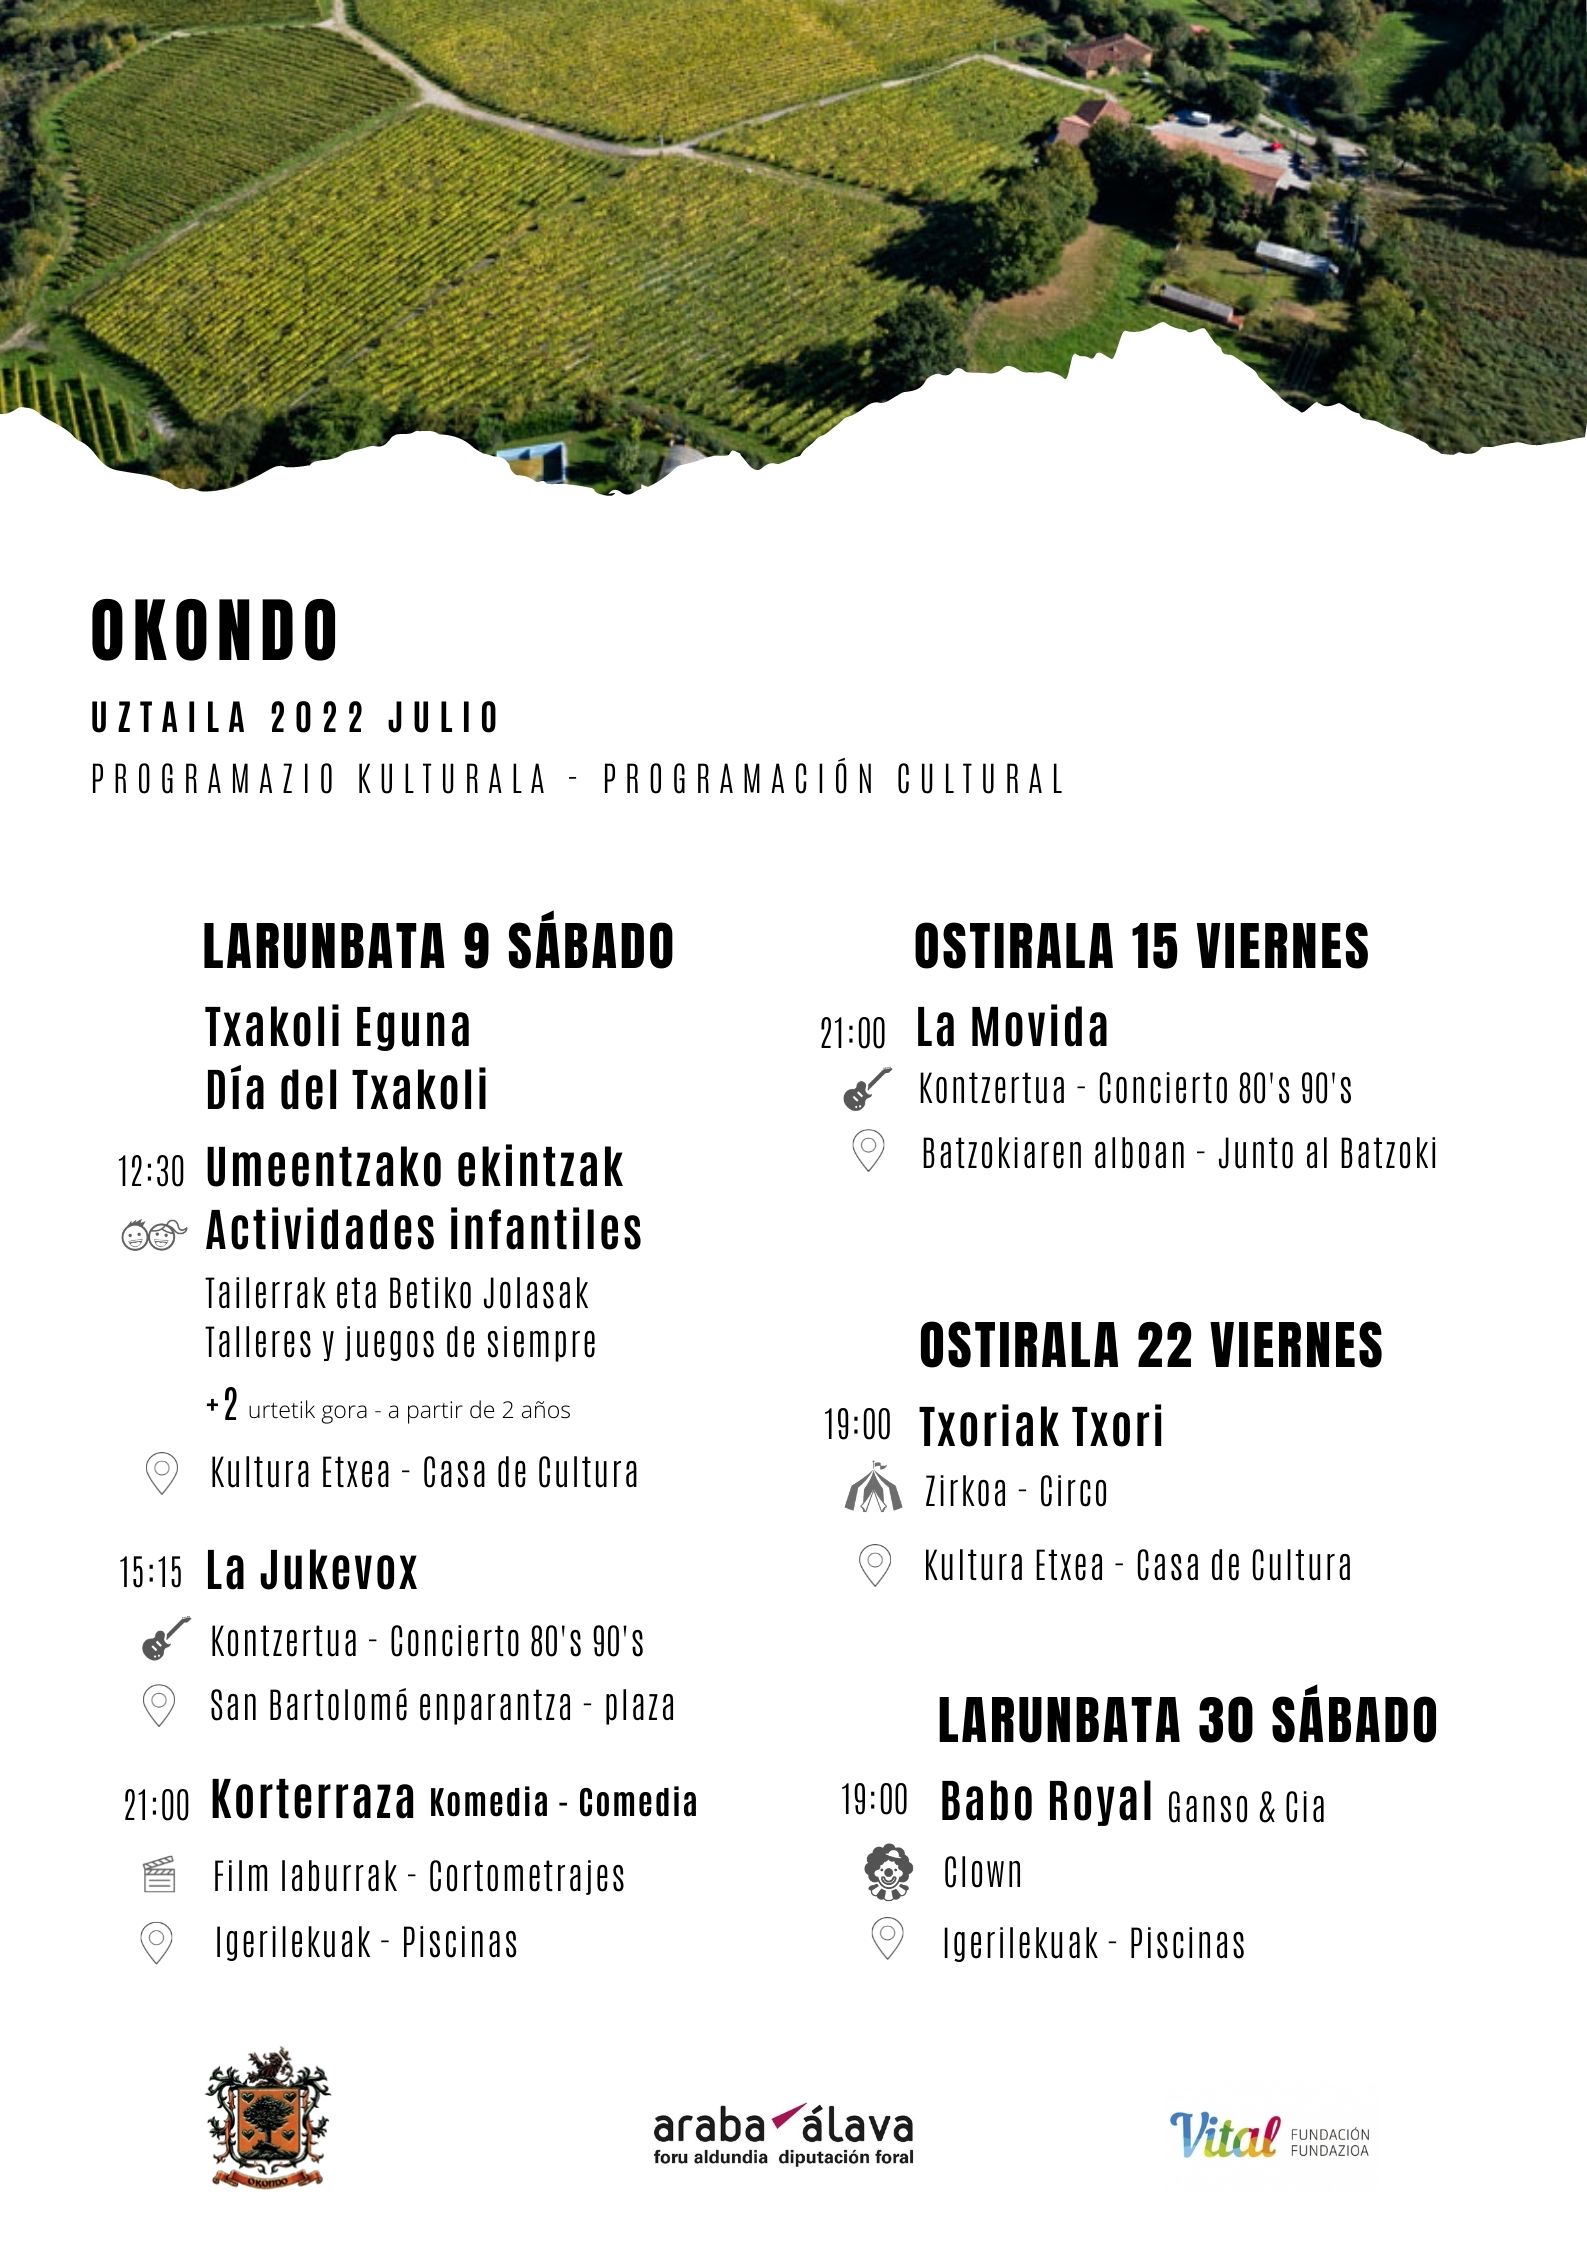 PROGRAMACIÓN CULTURAL DE OKONDO, JULIO 2022